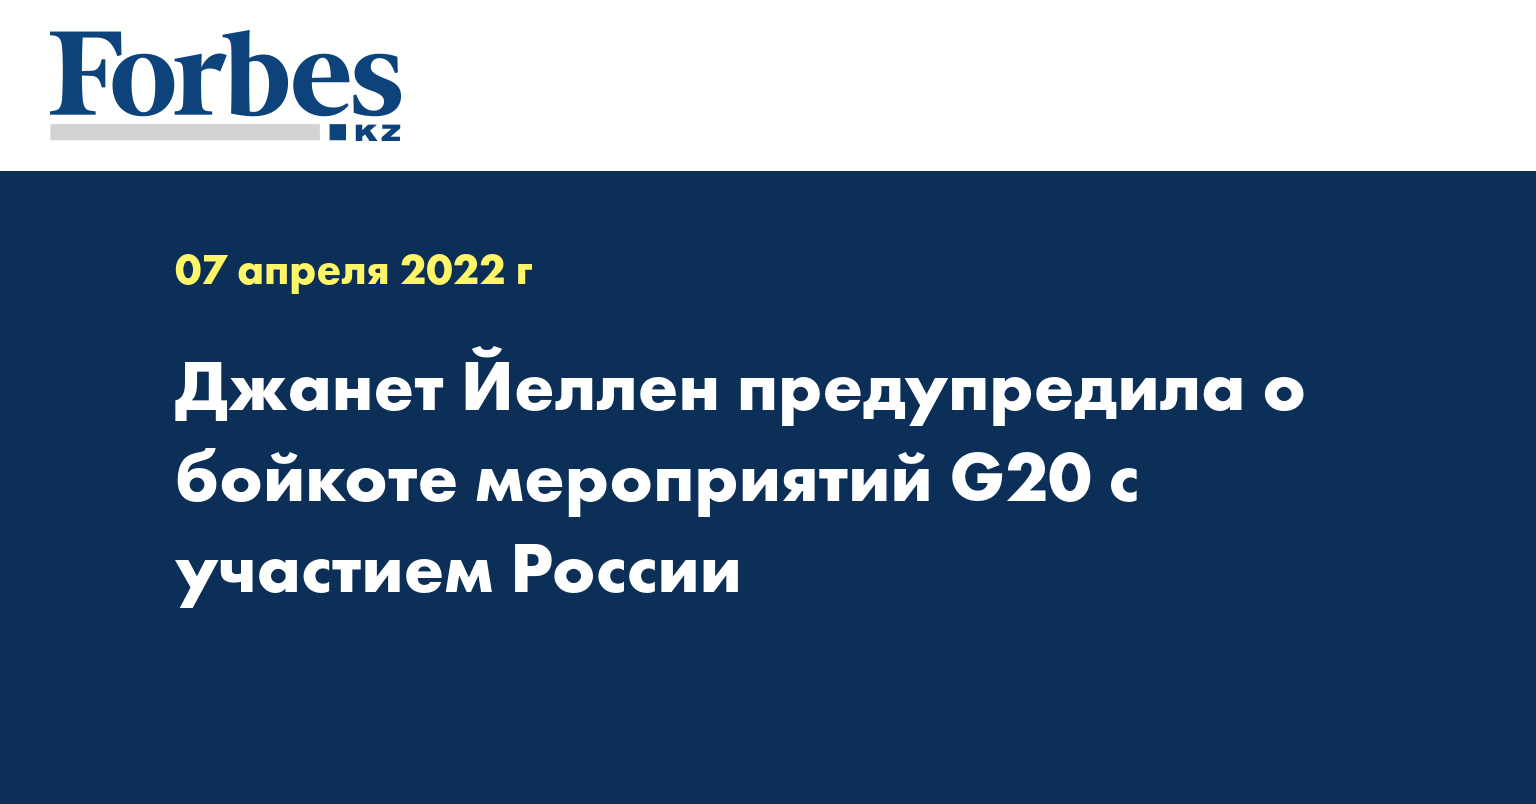 Джанет Йеллен предупредила о бойкоте мероприятий G20 c участием России